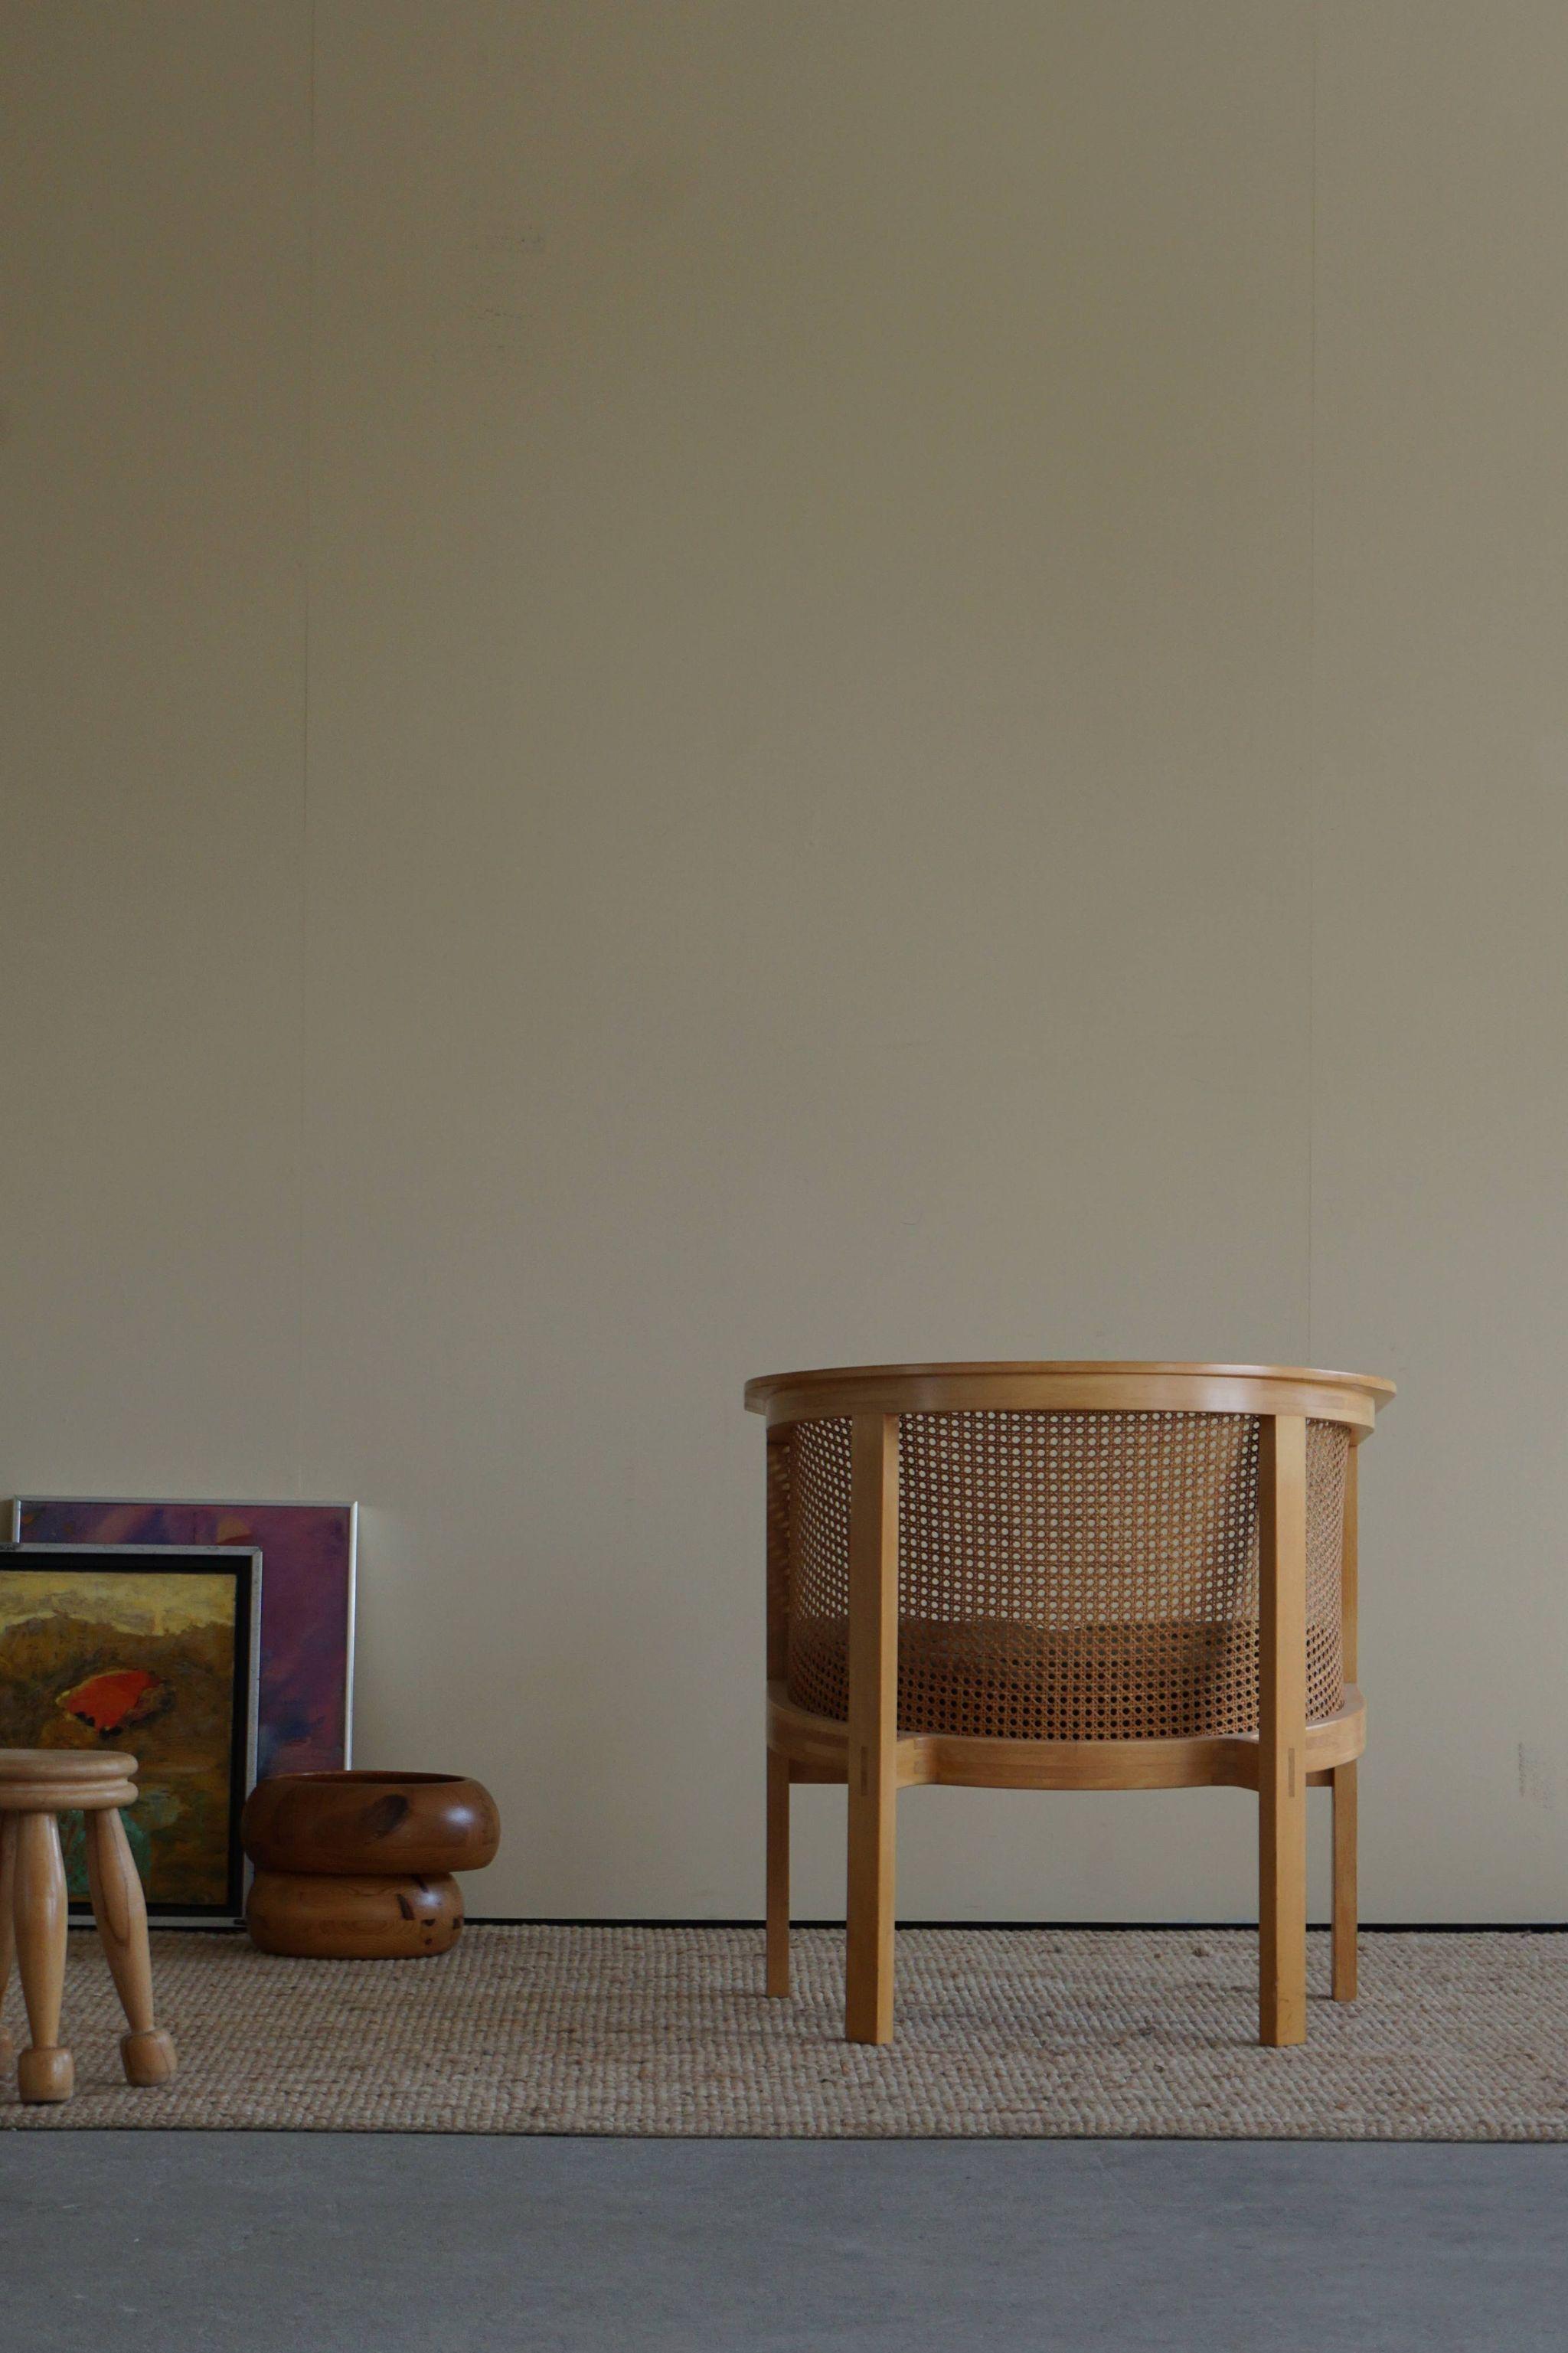 Sessel aus der Mitte des Jahrhunderts aus Buche, Rohr und schwarzem Leder, hergestellt von dem dänischen Designer Rud Thygesen & Johnny Sørensen für Botium, 1980er Jahre. Der Stuhl ist Teil der King-Serie.

Der Stuhl ist schön patiniert und in